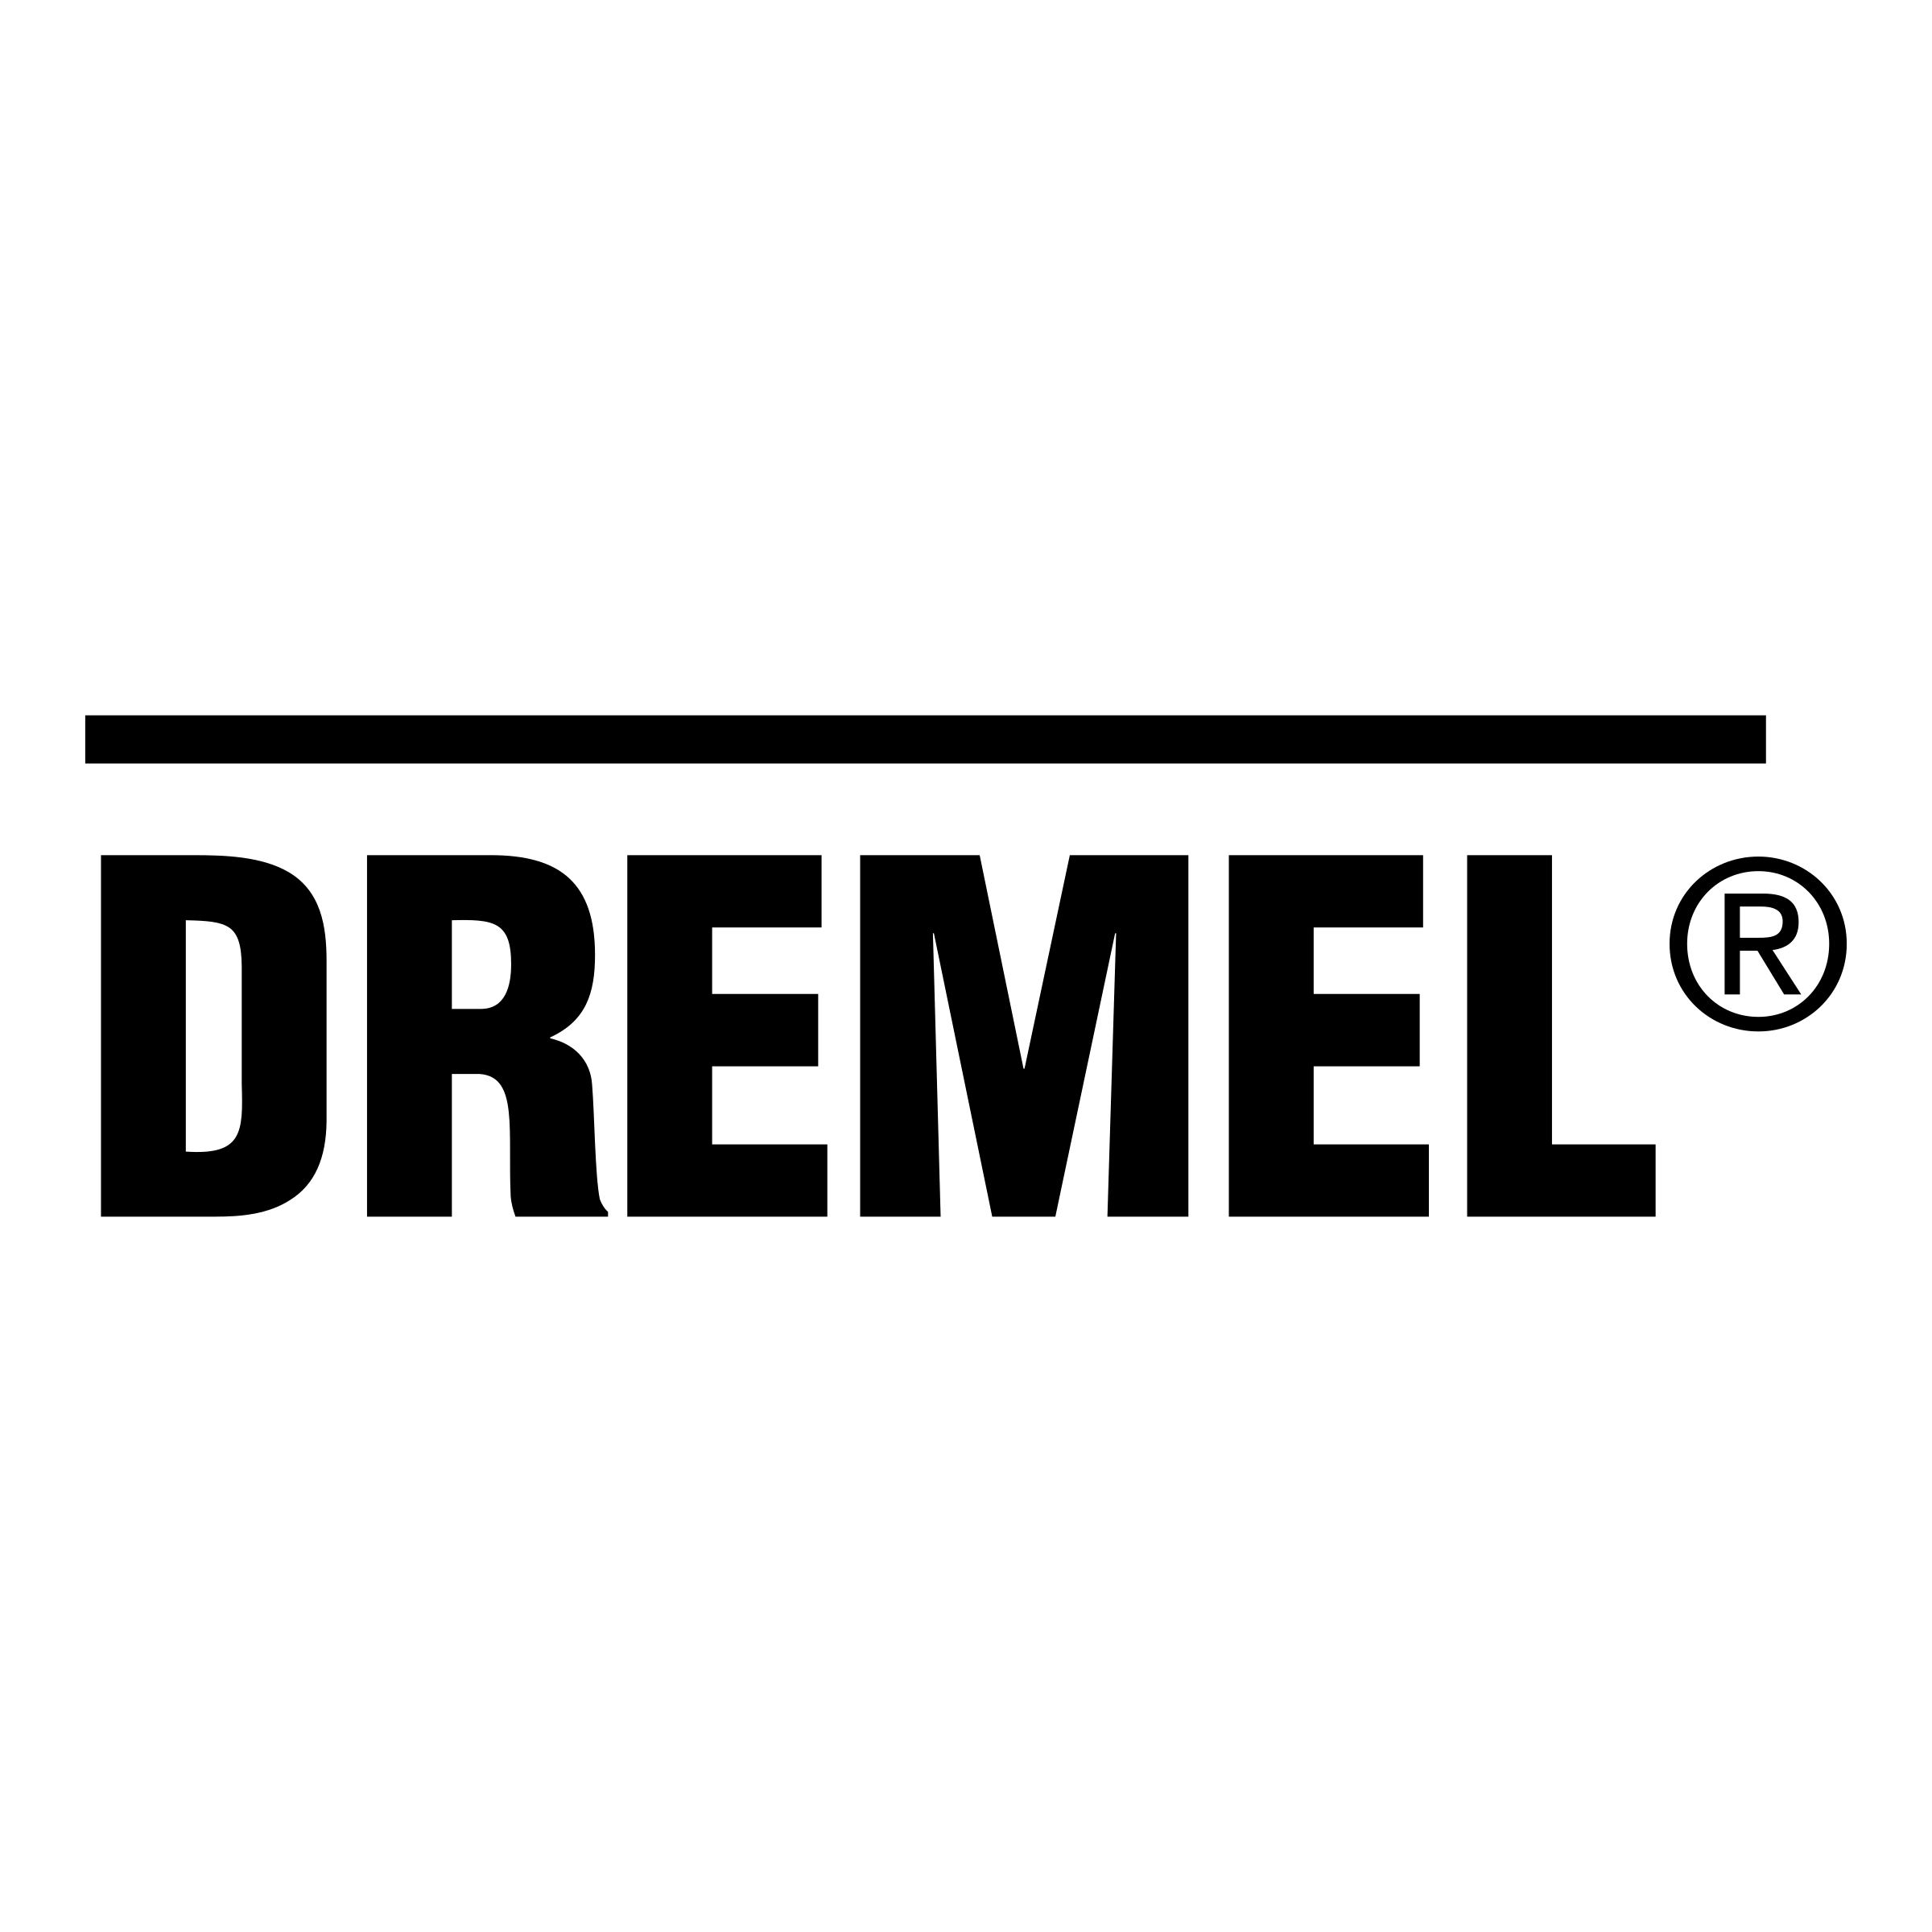 Dremel Logo - Dremel Logo PNG Transparent & SVG Vector - Freebie Supply